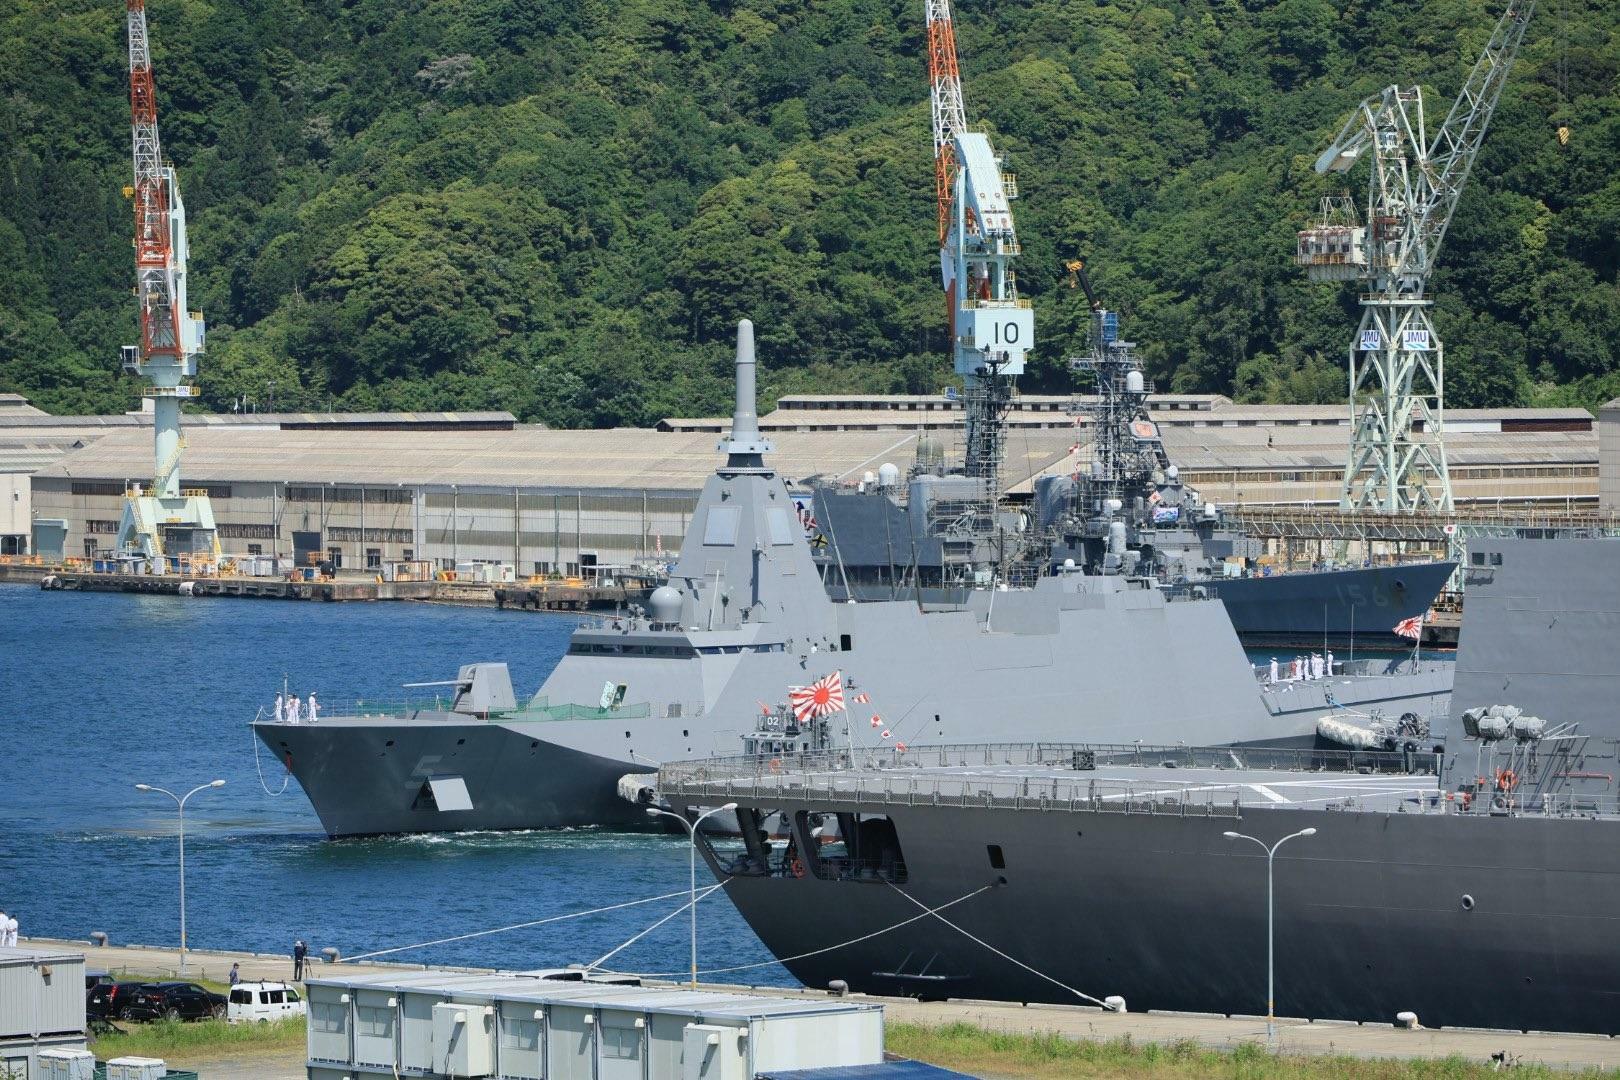 5月21日の就役後、初めて海自舞鶴基地に入港するもがみ型護衛艦（FFM）5番艦「やはぎ」（自衛隊協力会 はぎの会撮影、提供）